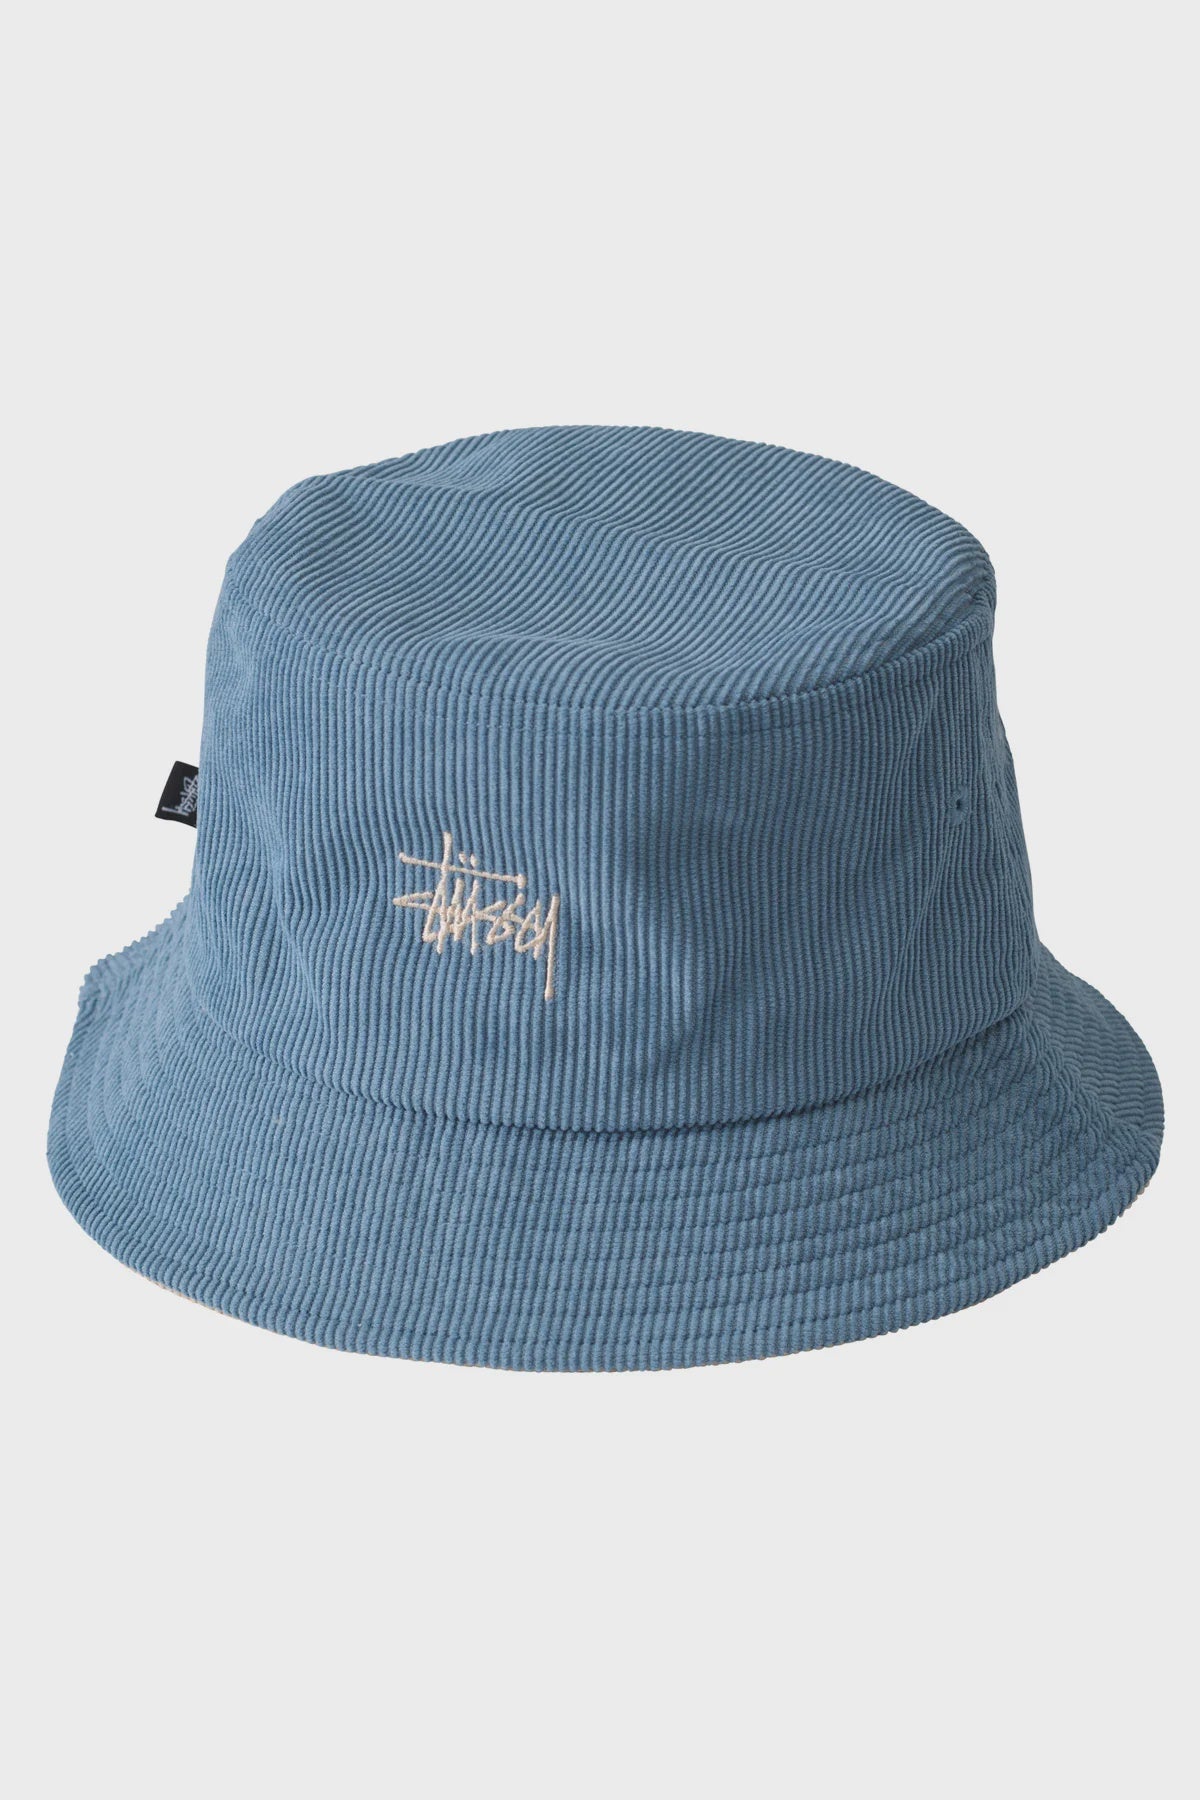 Stussy - graffiti cord bucket hat - natural/ steel blue